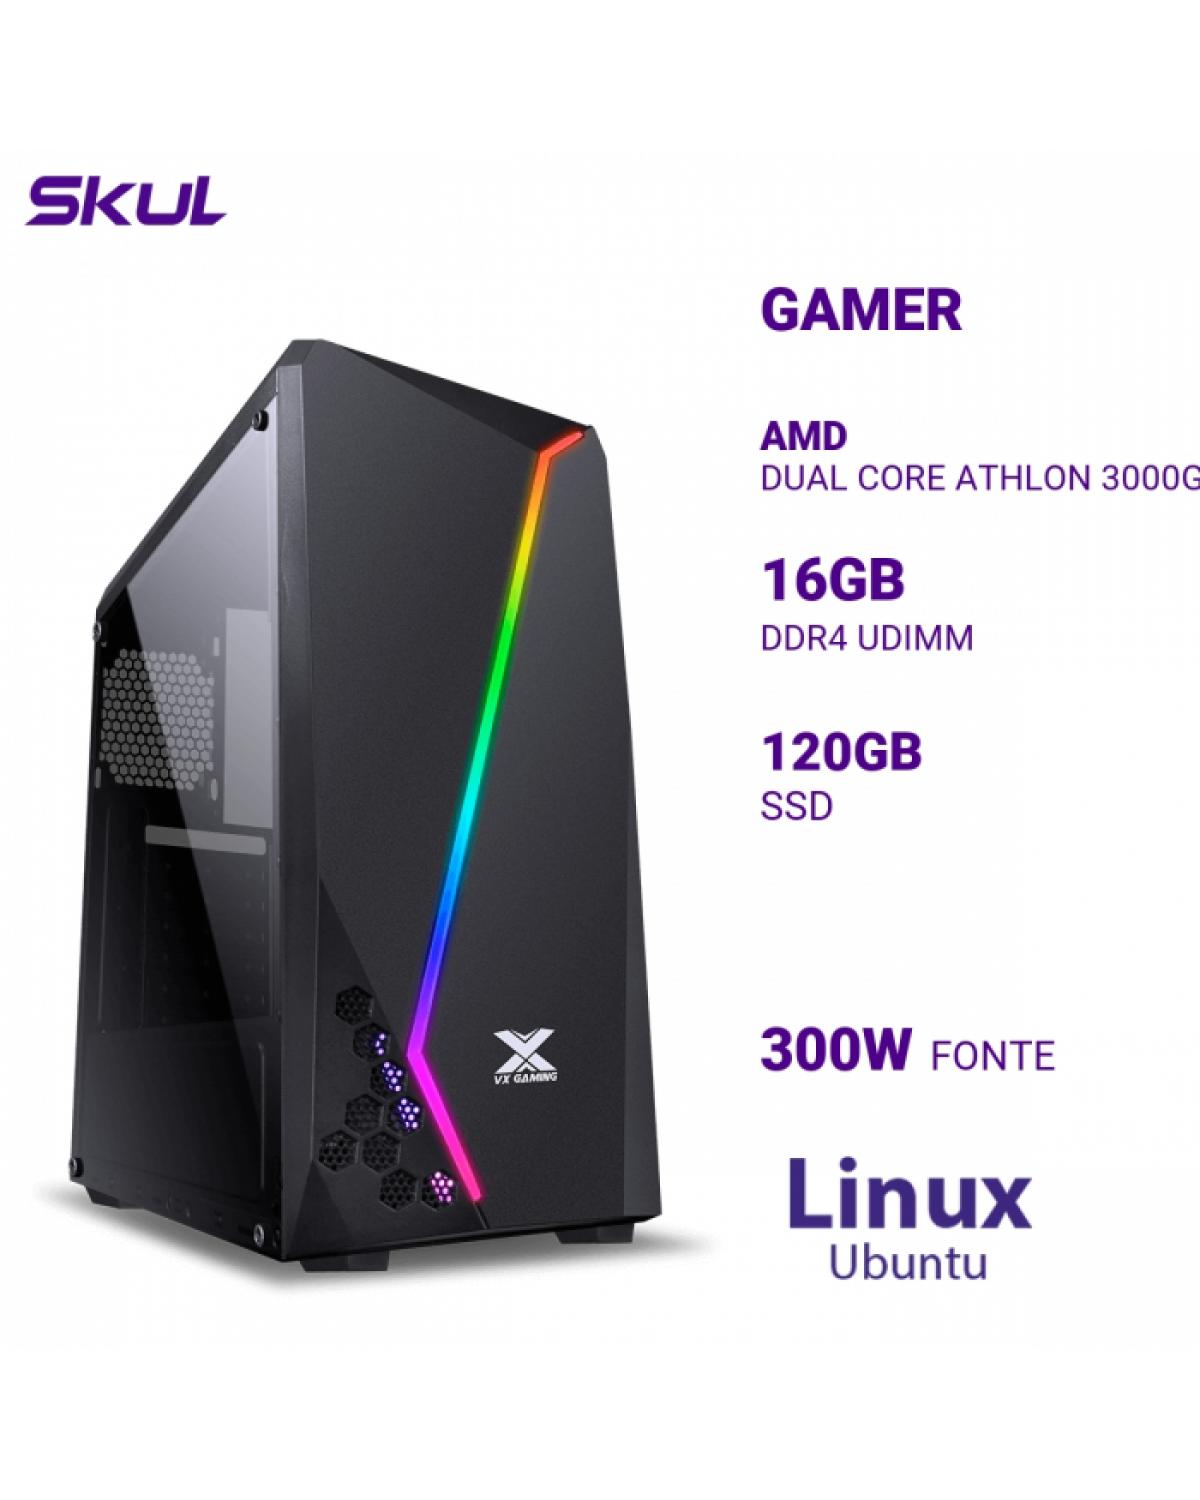 COMPUTADOR GAMER 1000 DUAL CORE ATHLON 3000G 3.50GHZ MEM 16GB DDR4 SSD 120GB FONTE 300W LINUX